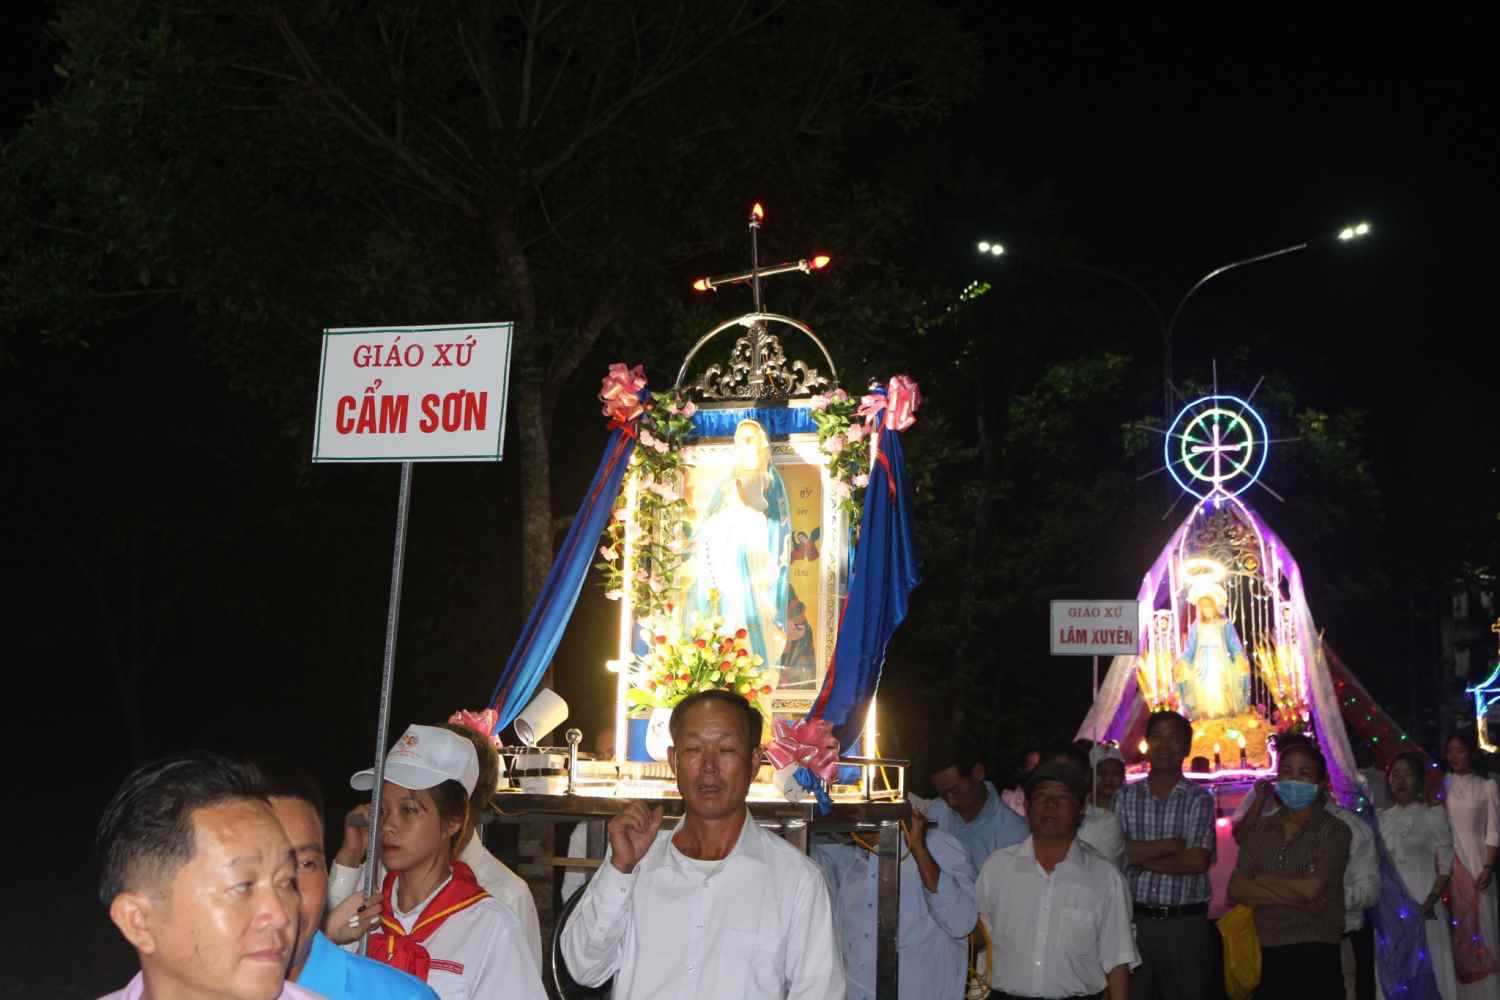  Cung nghinh tượng Đức Mẹ Maria toàn Giáo hạt  và dâng lễ tạ ơn tại Quảng trường